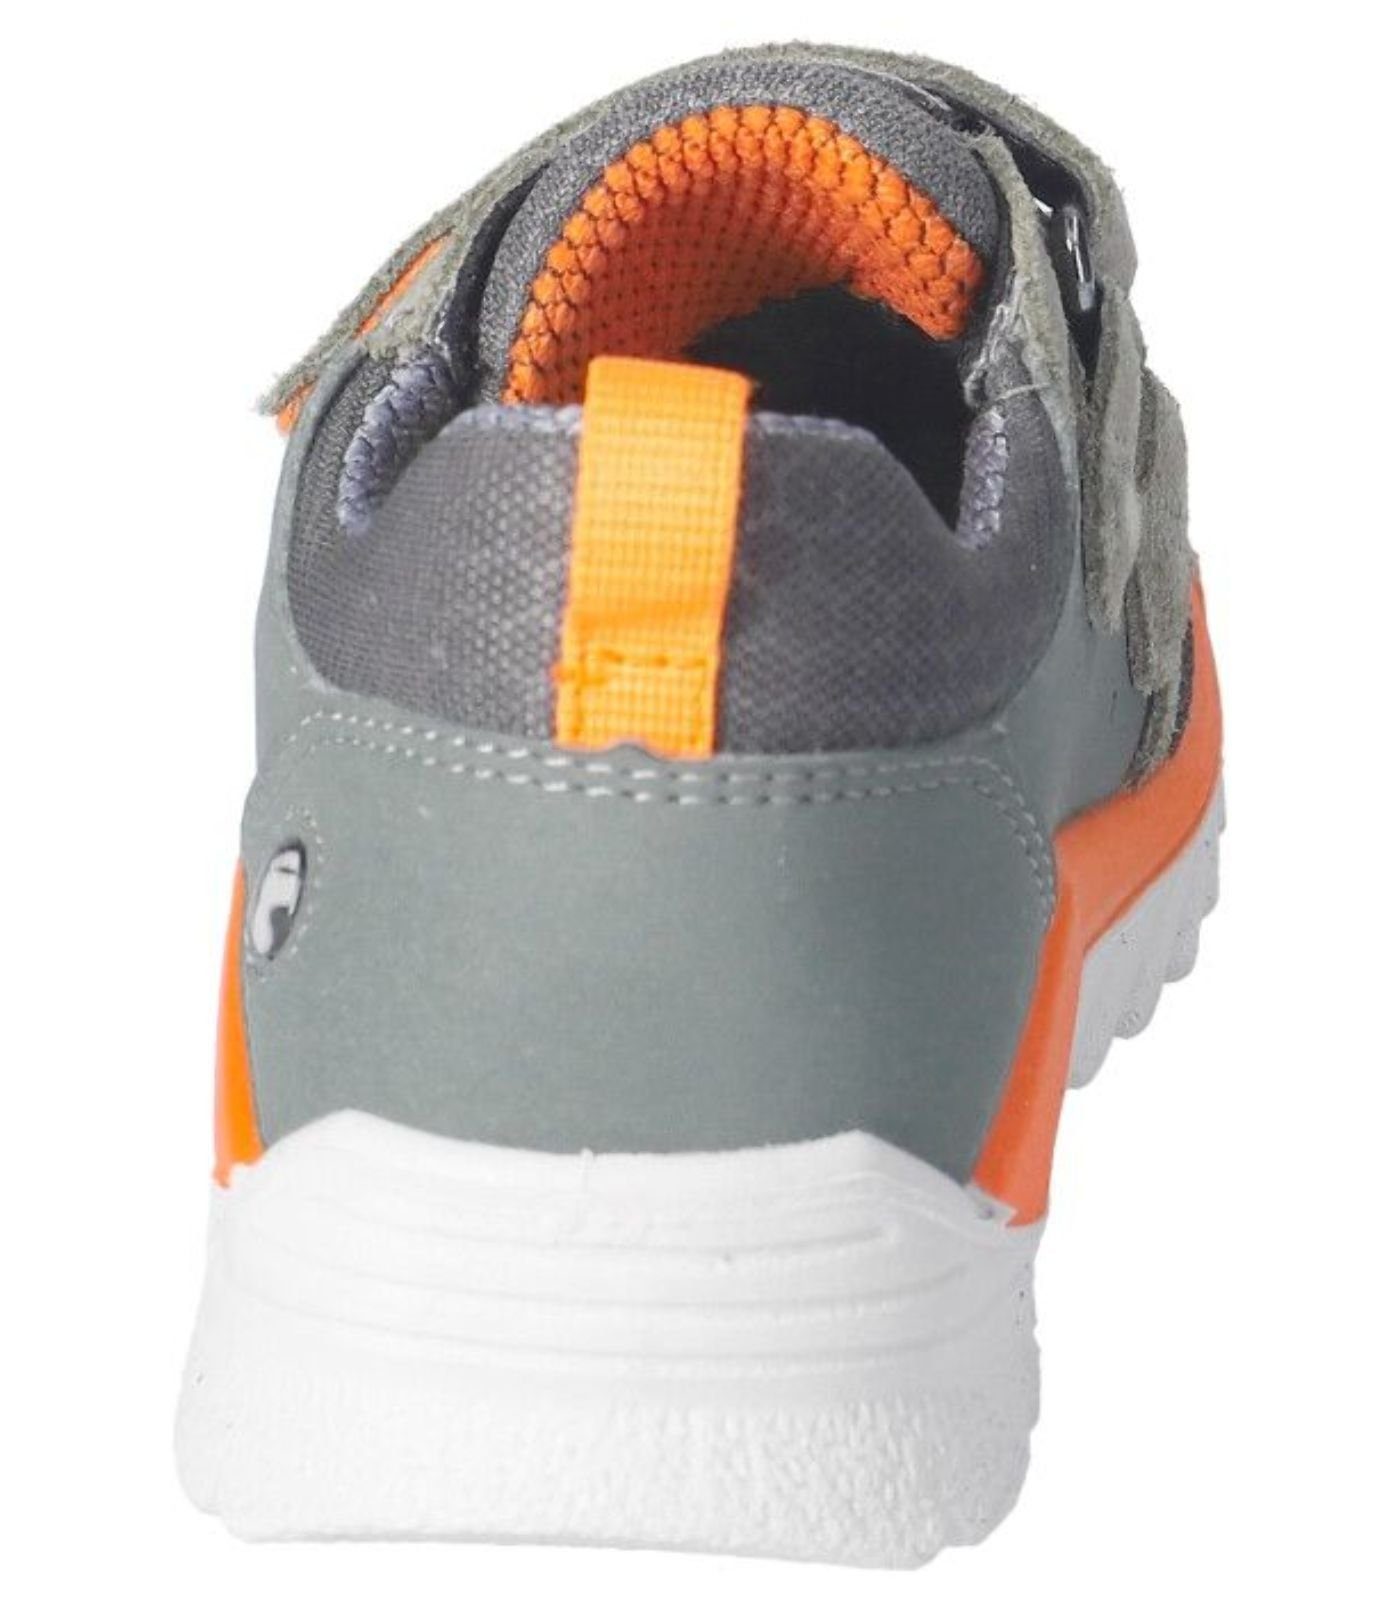 Veloursleder/Textil Sneaker Sneaker eukalyptus/grau (530) Ricosta